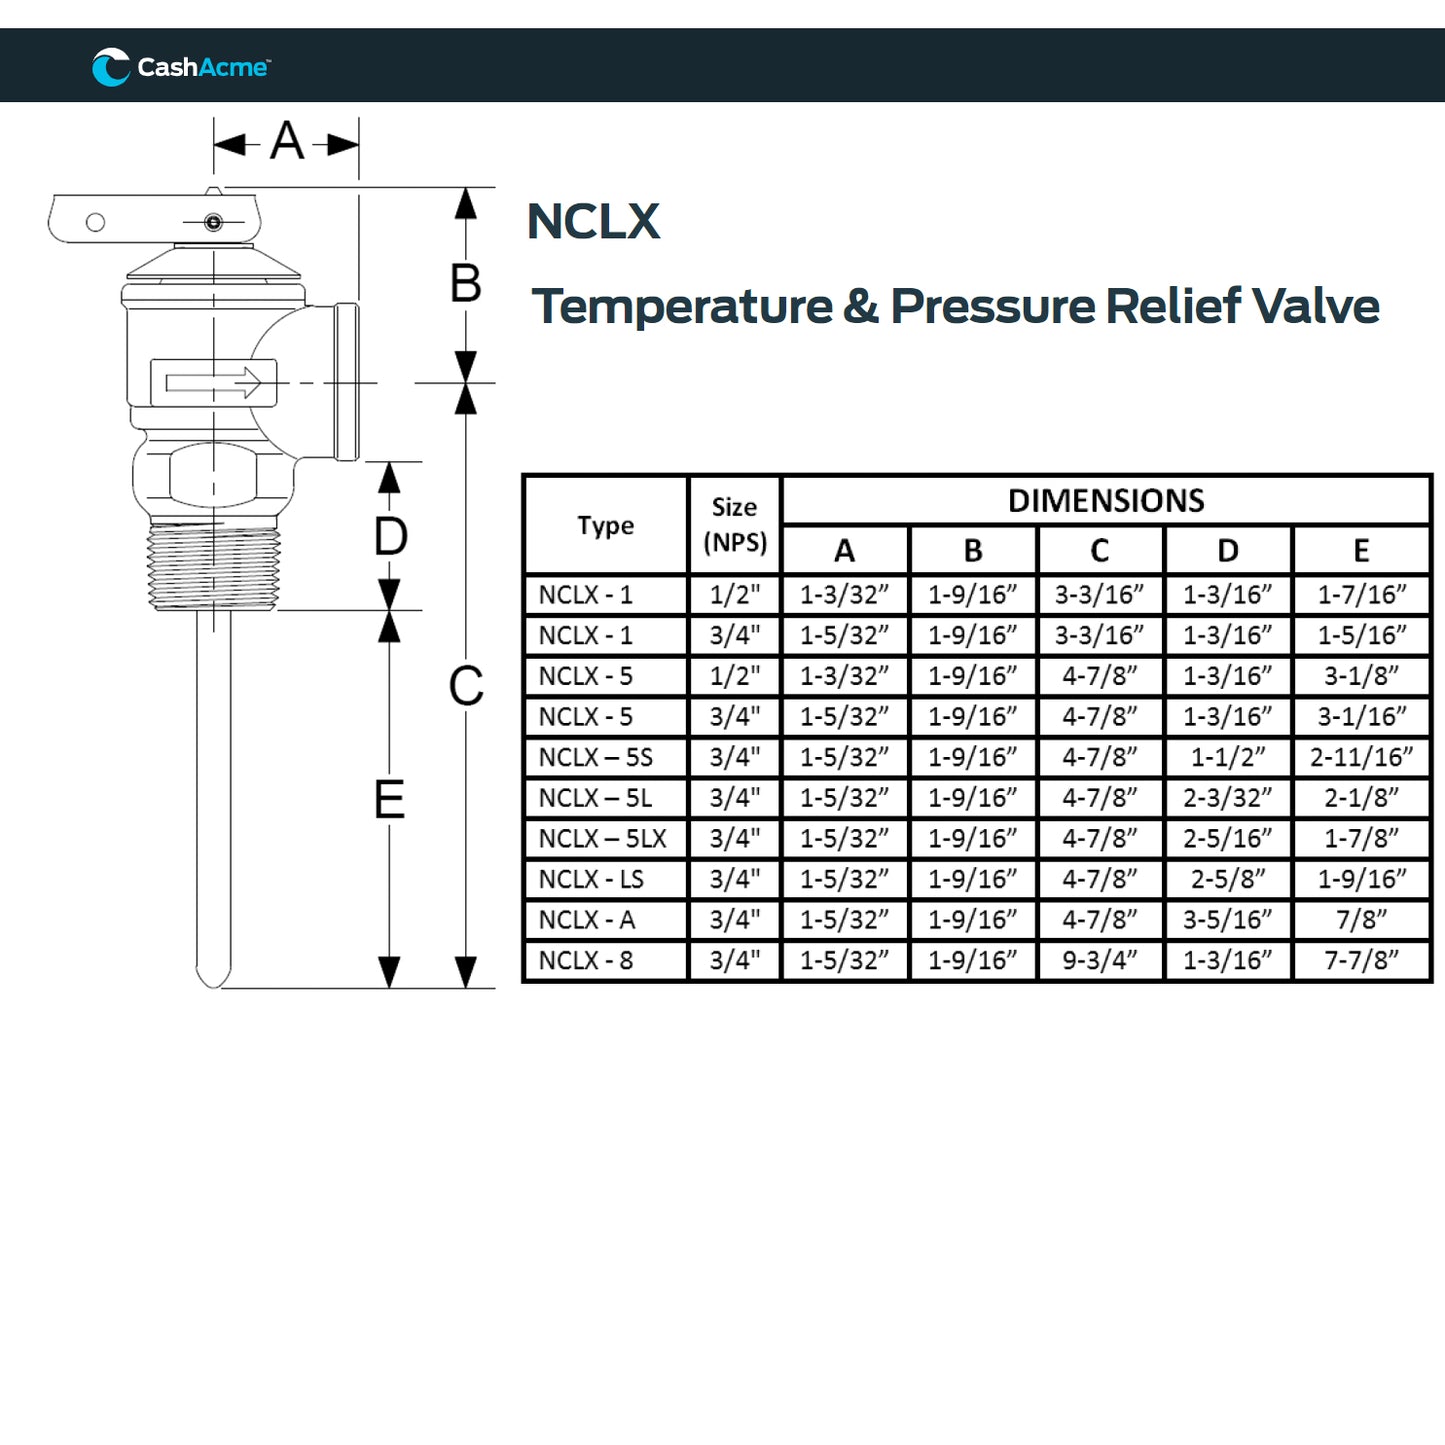 18821-0150 - 3/4" NCLX-5L Domestic Temperature and Pressure Relief Valve